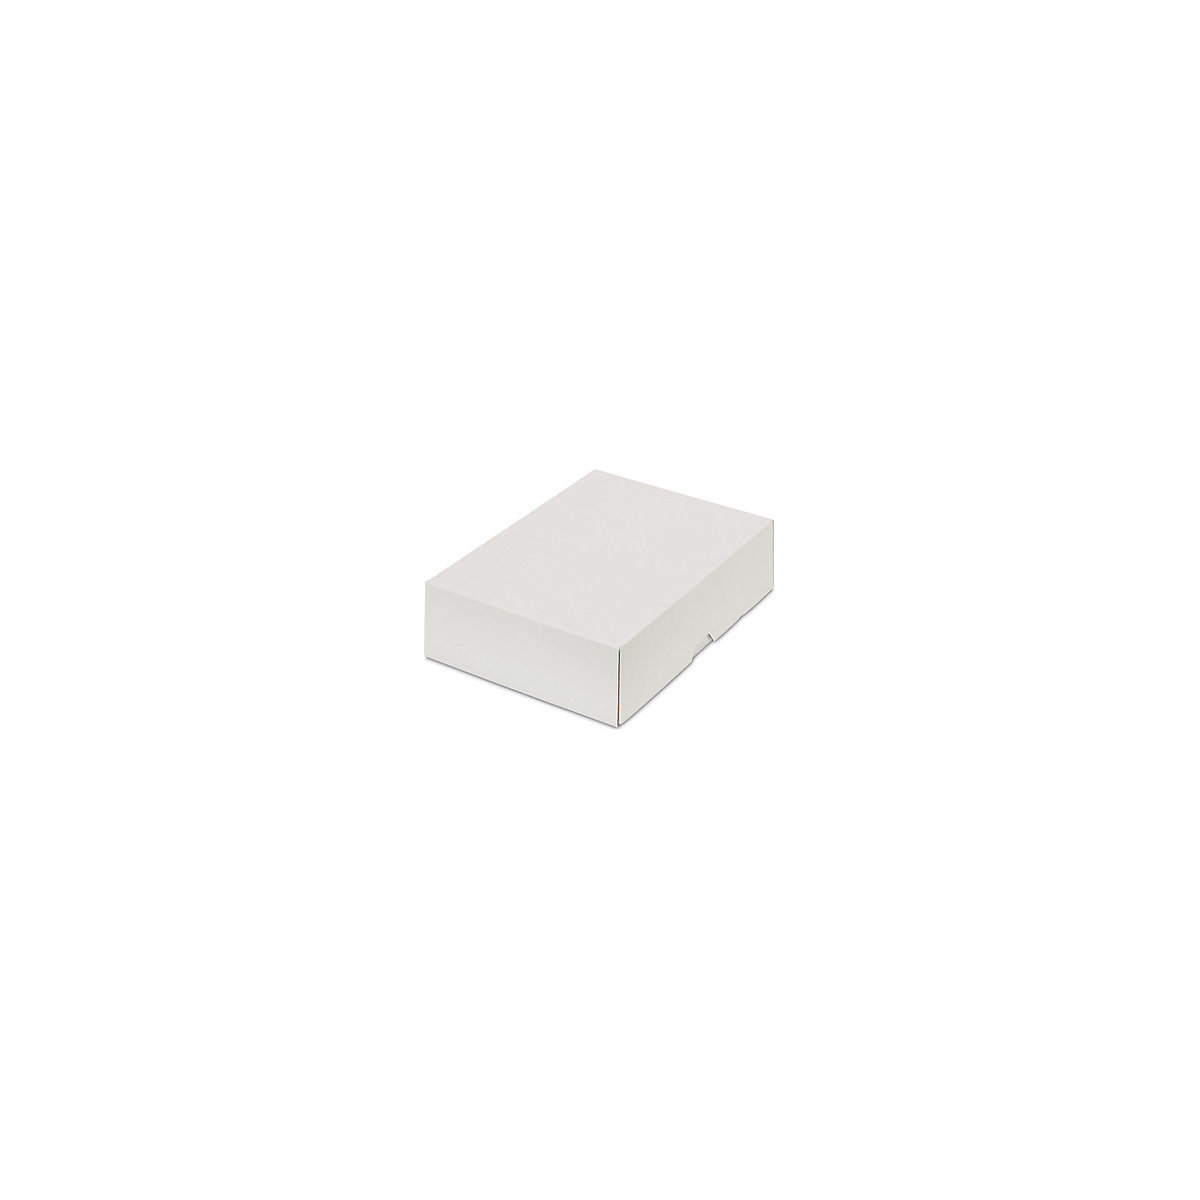 Stülpdeckelkarton, zweiteilig, Innenmaße 227 x 155 x 55 mm, A5, weiß, ab 300 Stk-23